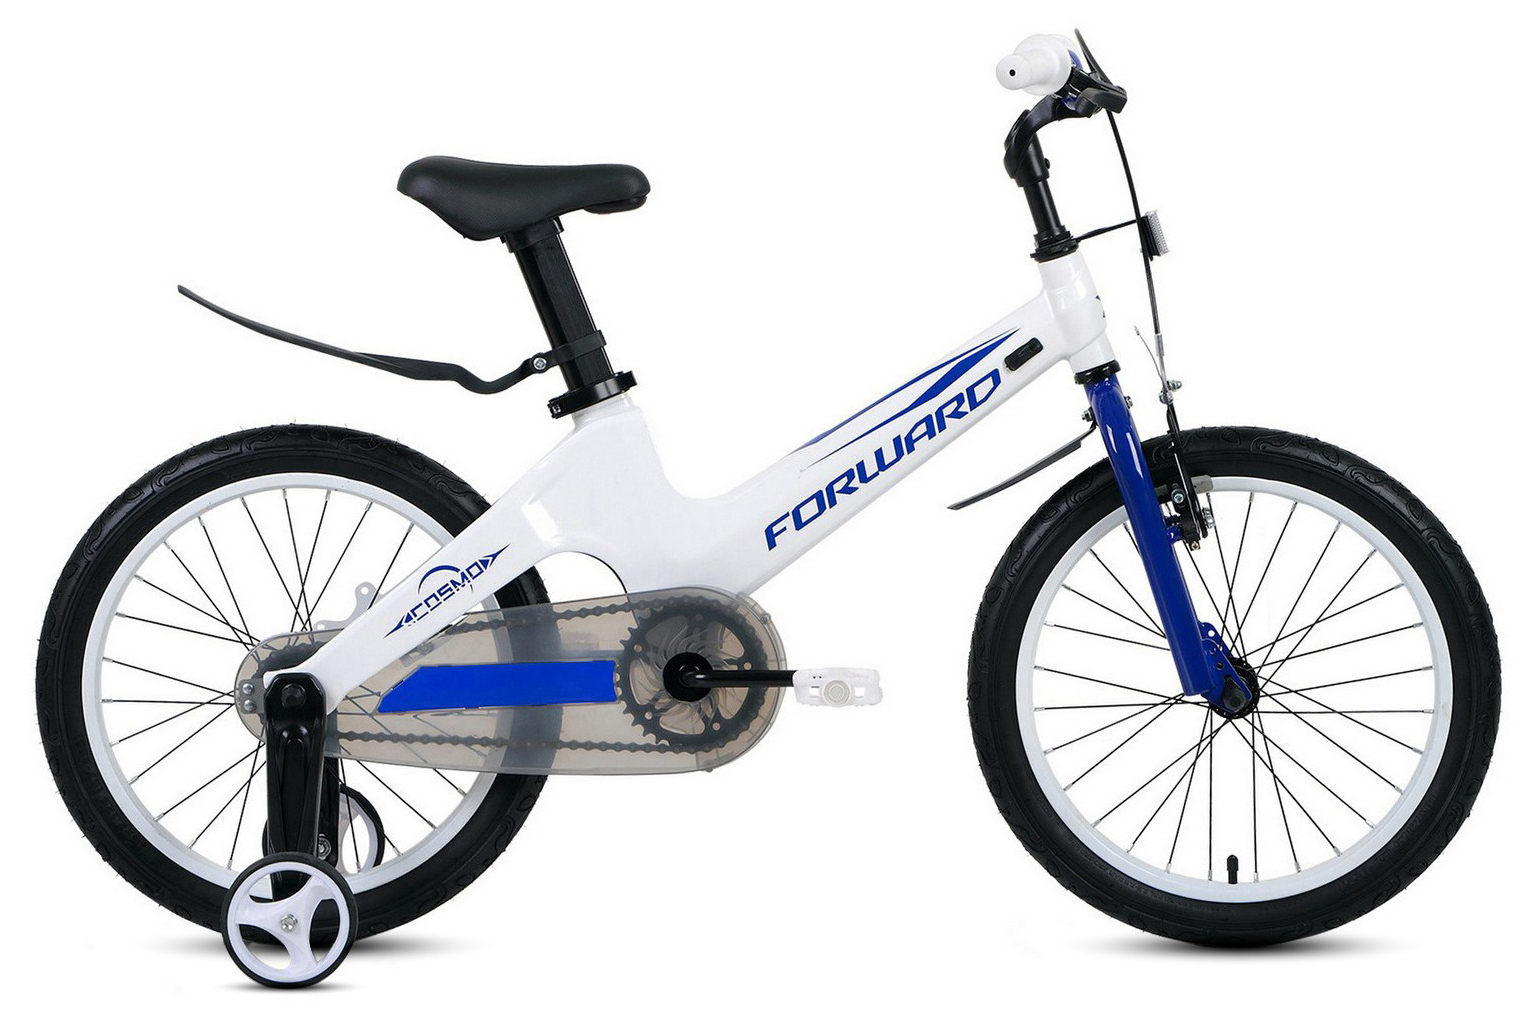  Отзывы о Детском велосипеде Forward Cosmo 18 2021